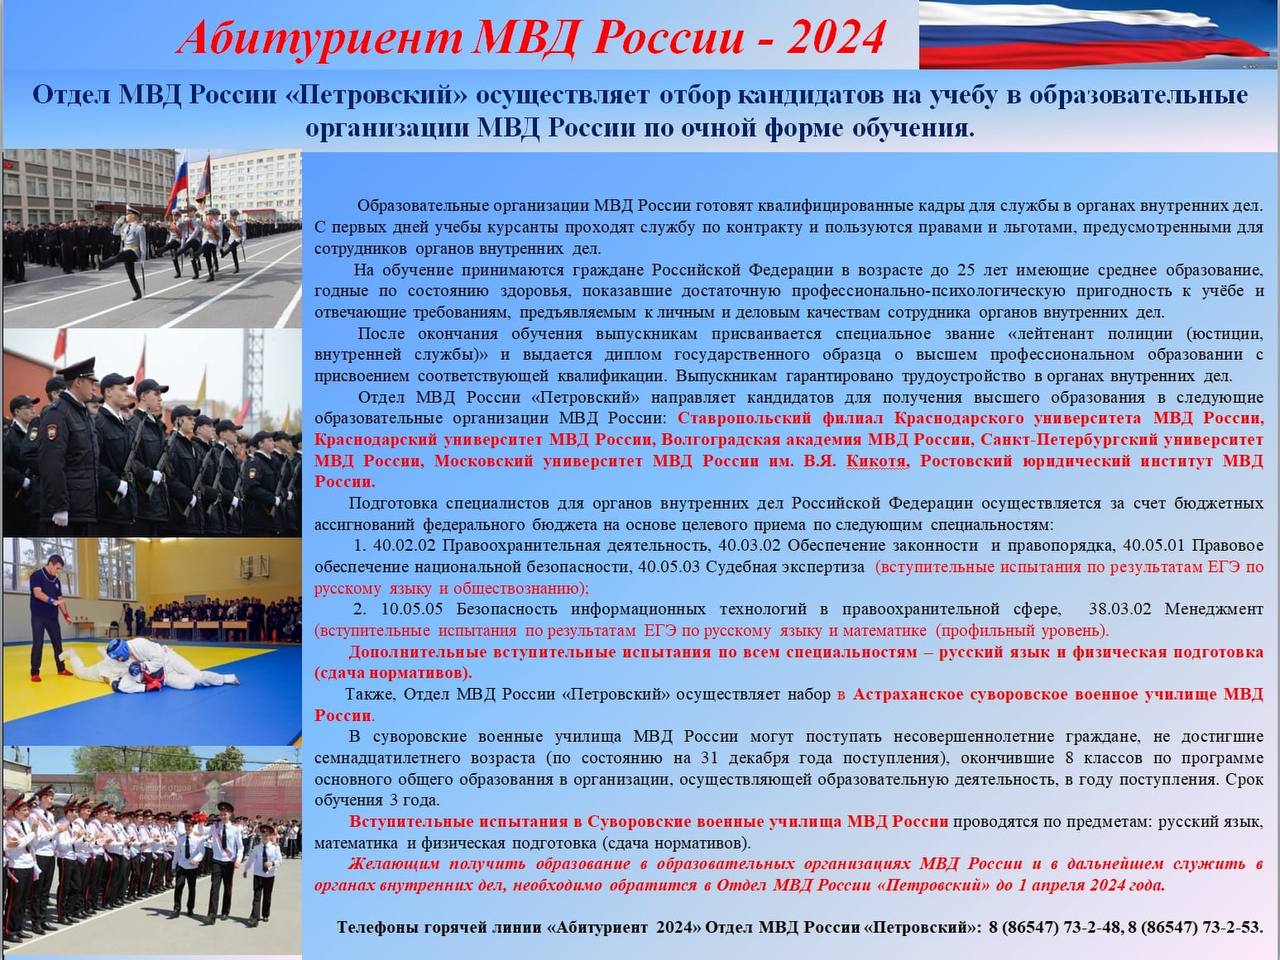 Осуществляется набор кандидатов на учебу в образовательные организации МВД России.